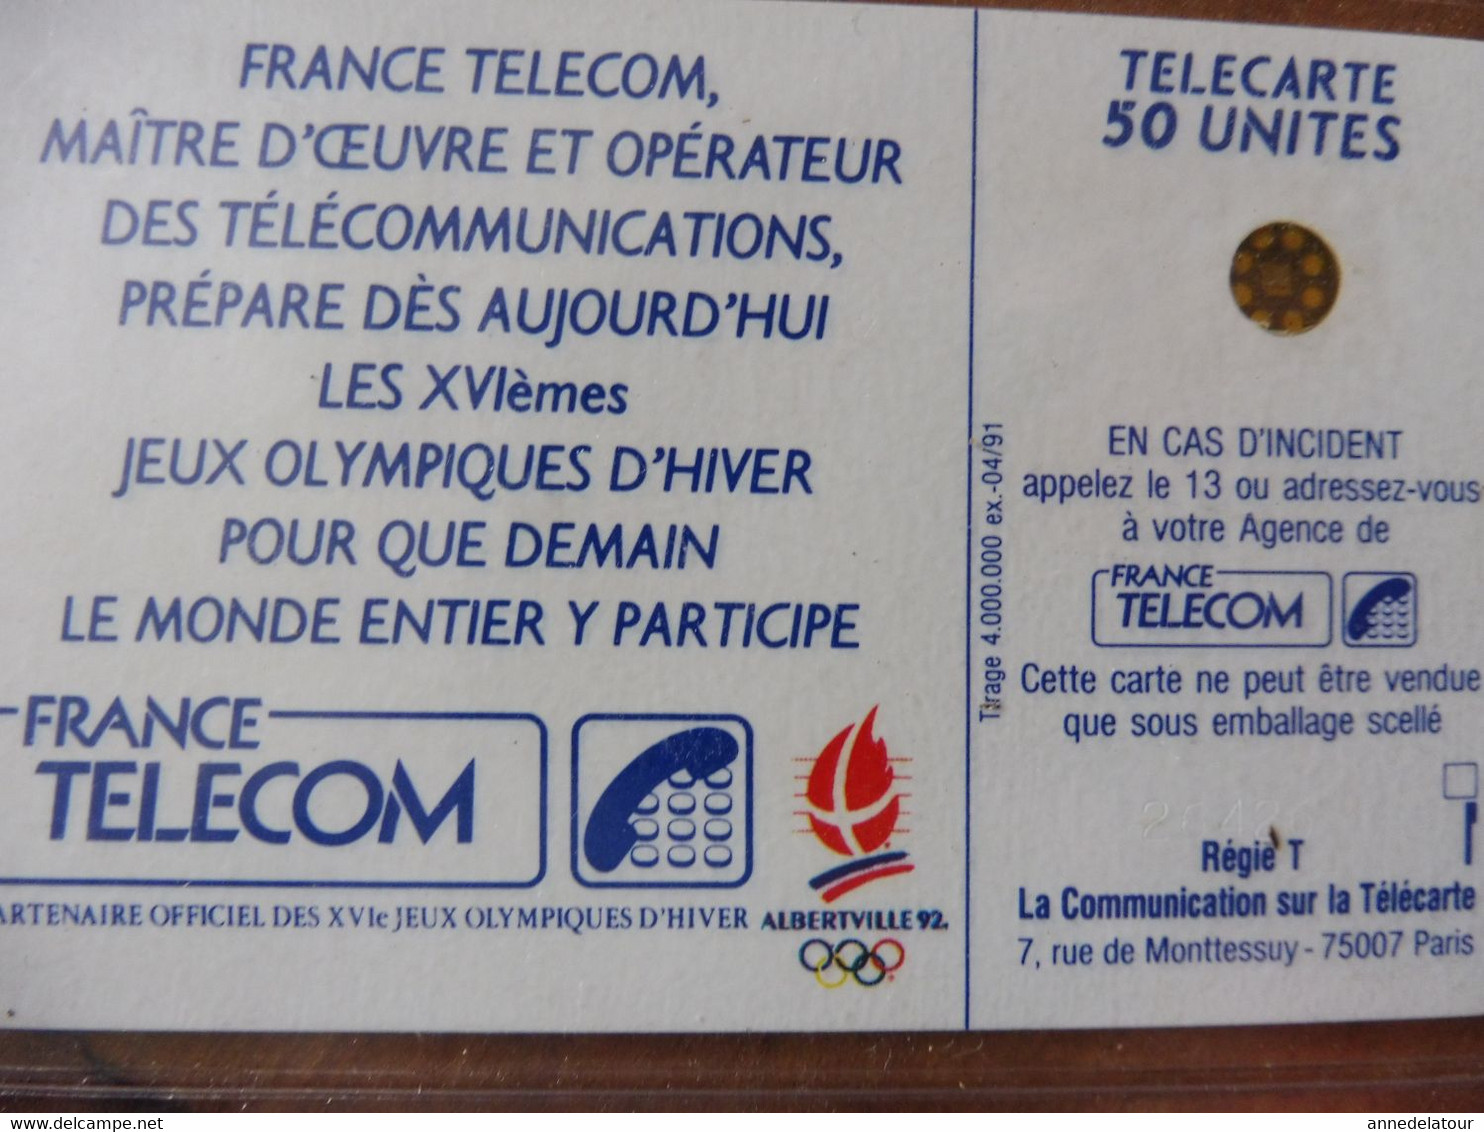 8 télécartes FRANCE TELECOM  Les XVIèmes  JEUX OLYMPIQUES D'HIVER pour que demain le monde entier y participe...